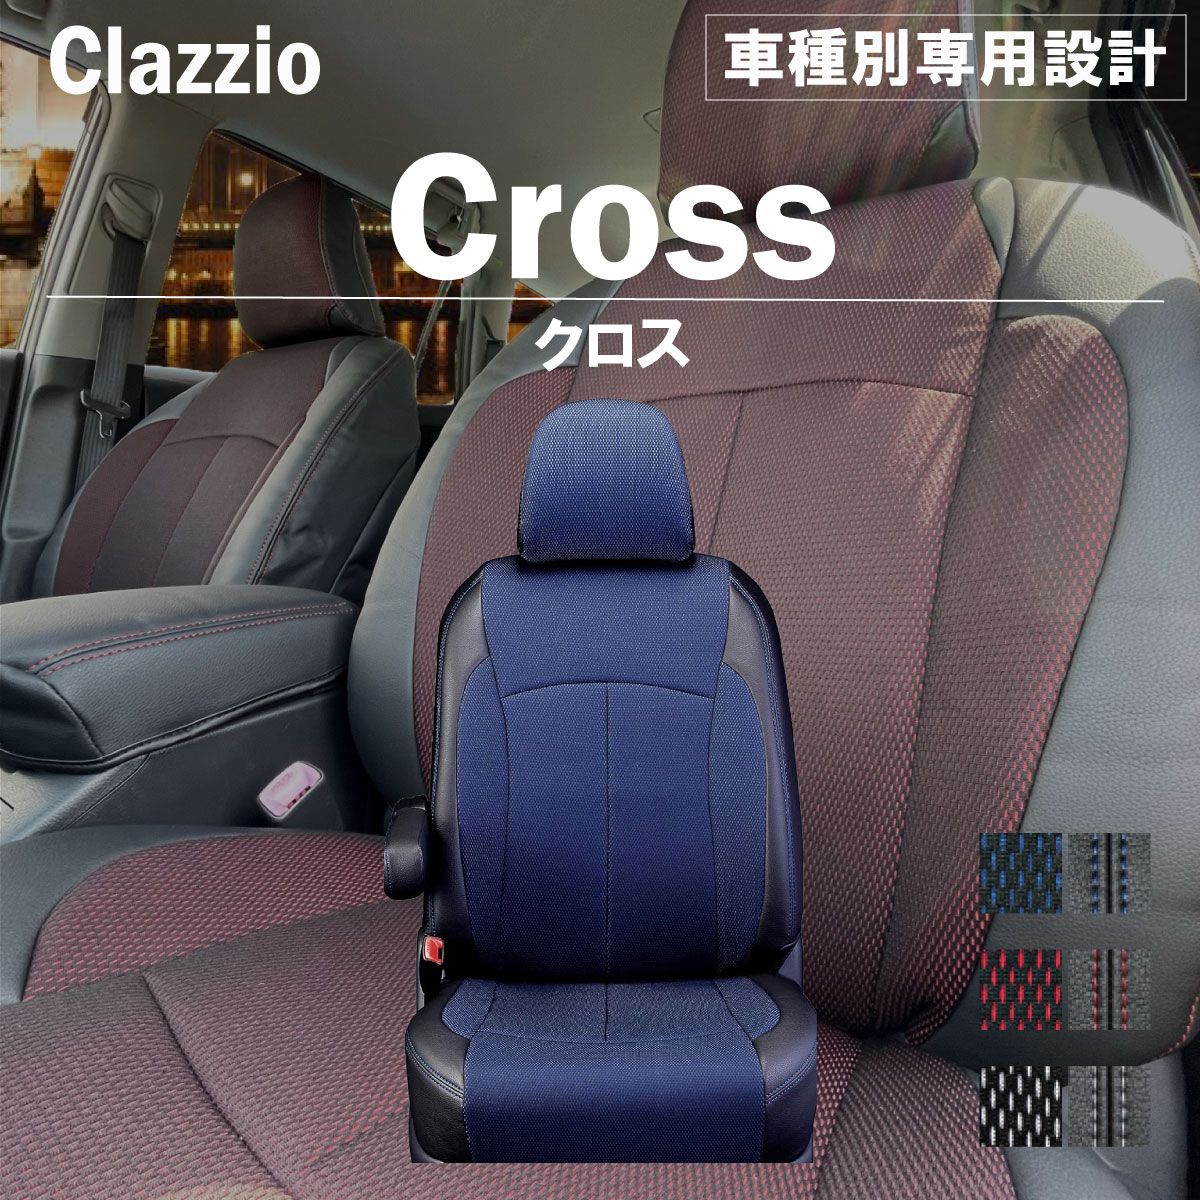 Clazzio クラッツィオ クロス シートカバー フィット ガソリン GR1 GR2 